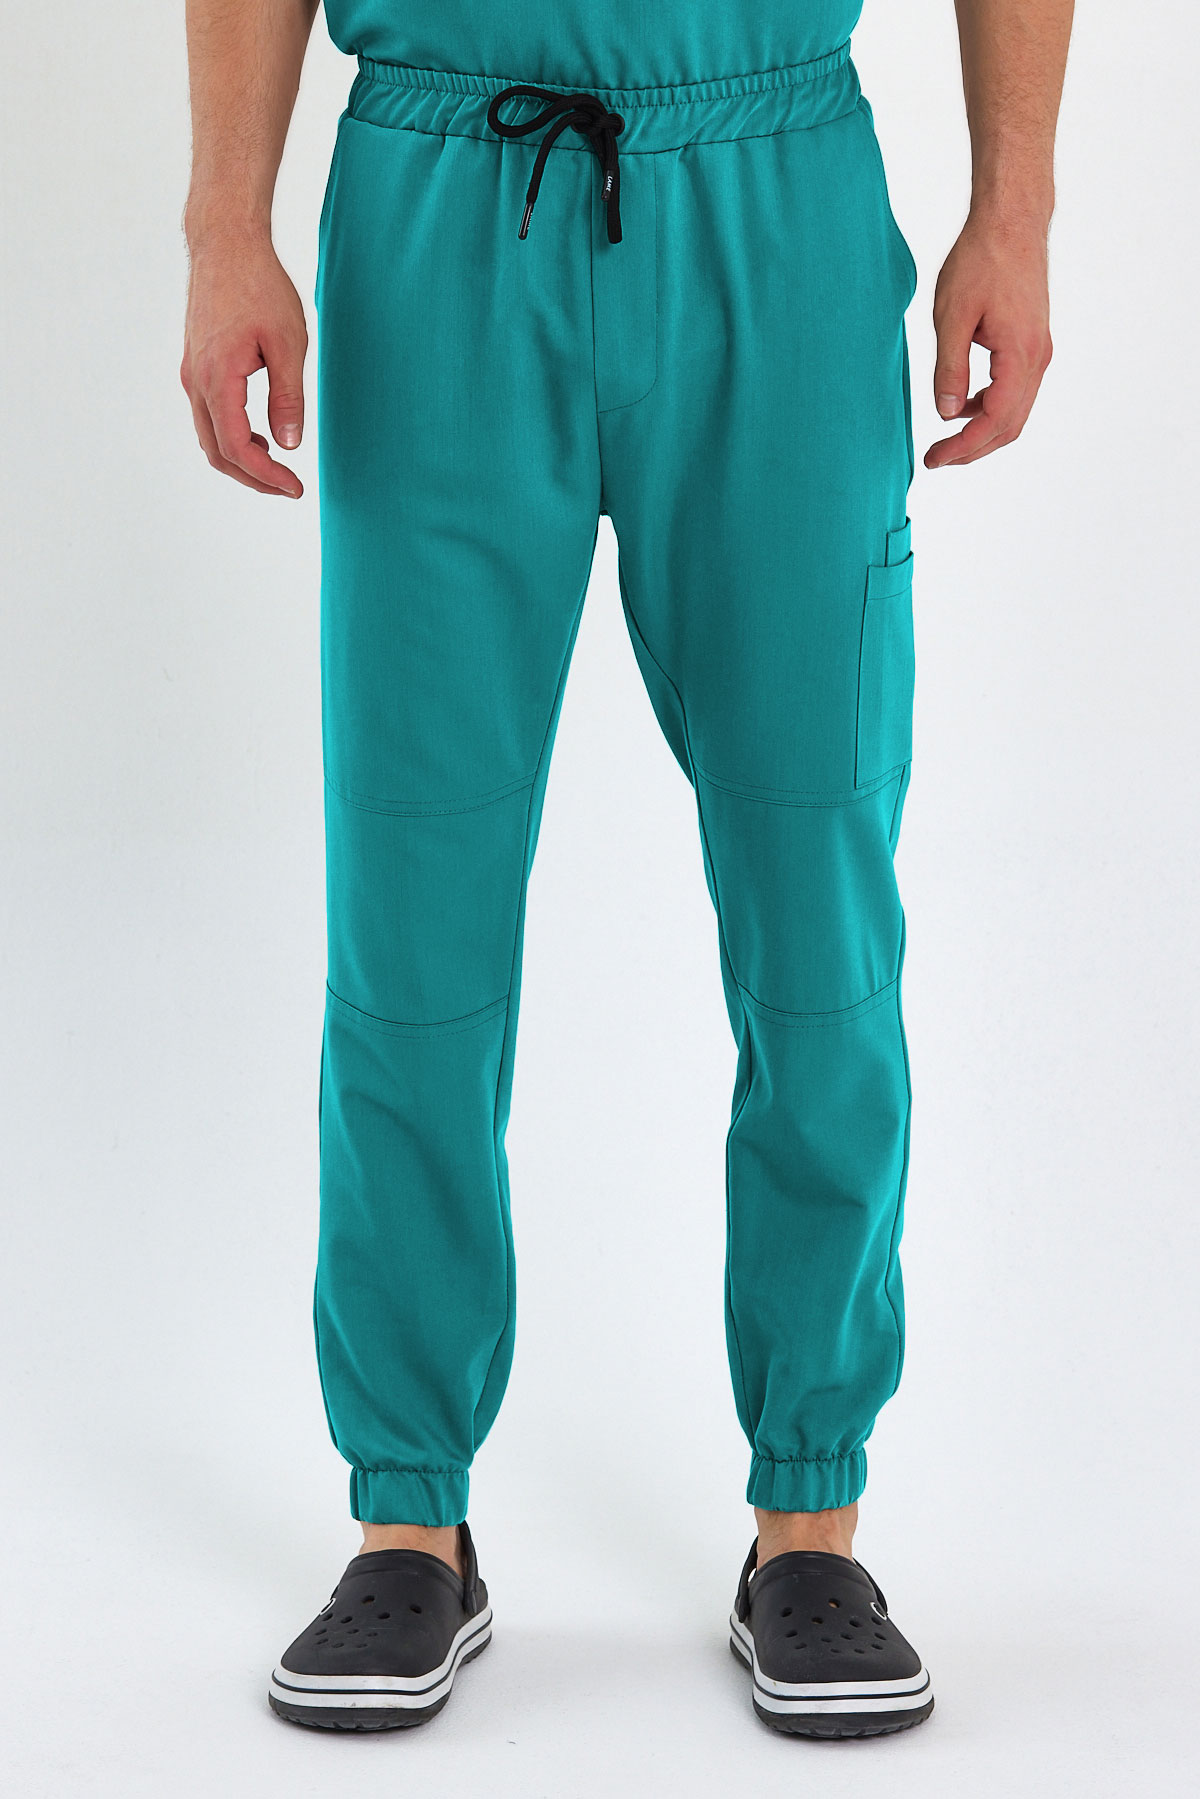 3005 Luxury Cerrahi Yeşil Pantolon